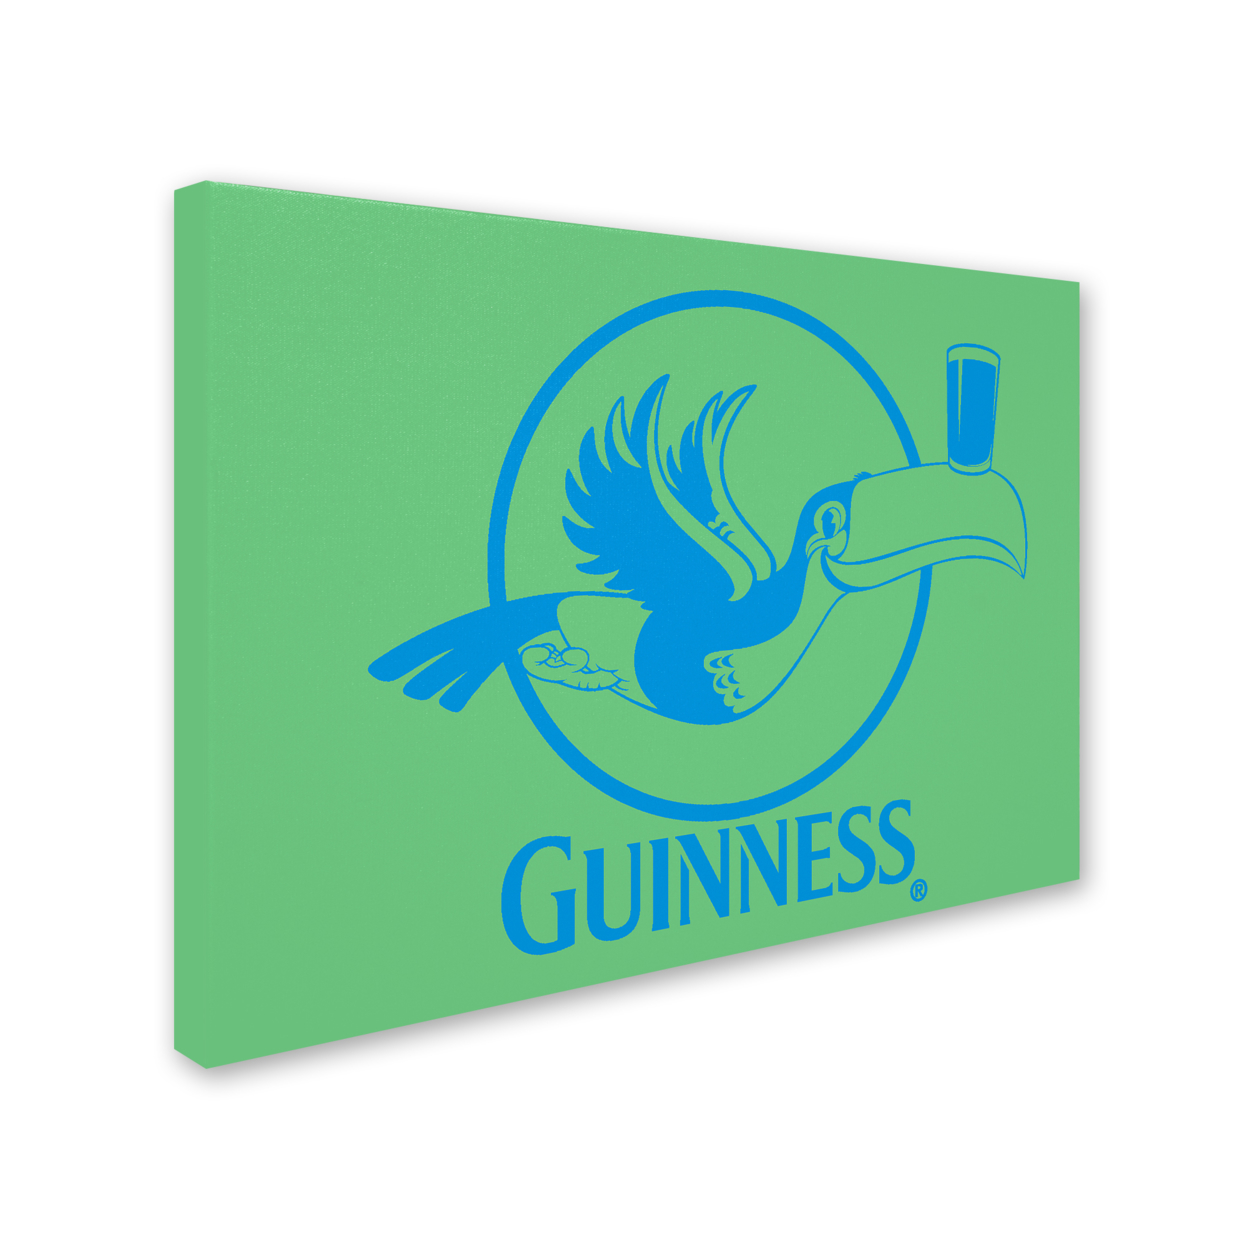 Guinness Brewery 'Guinness XVI' 14 X 19 Canvas Art